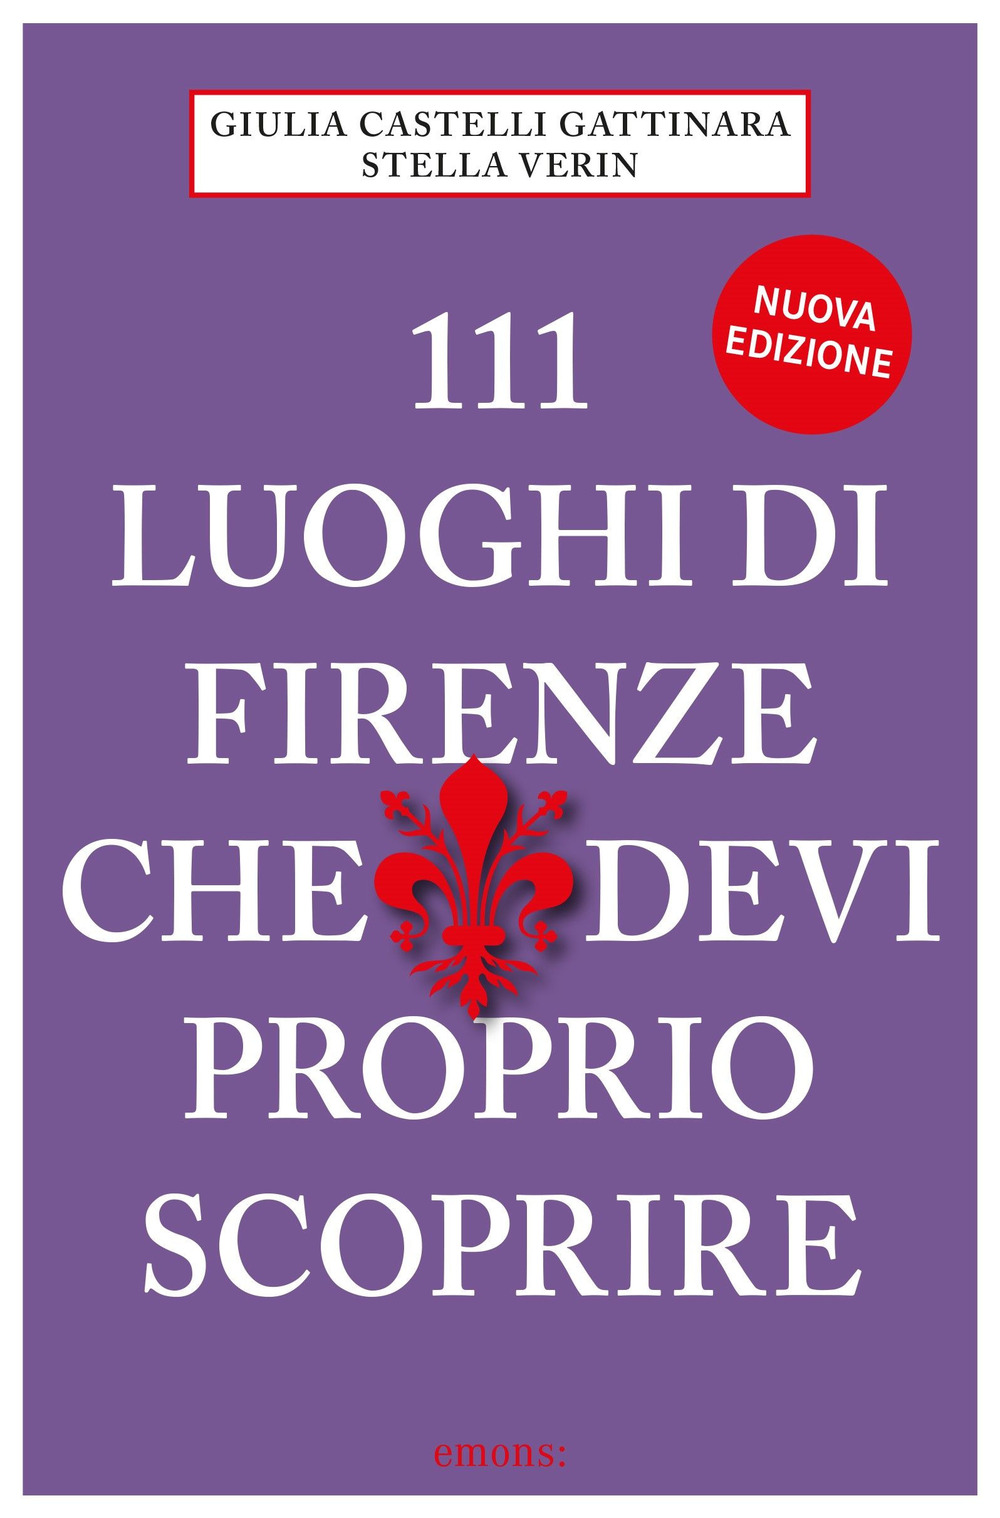 111 LUOGHI DI FIRENZE (nuova edizione) CHE DEVI PROPRIO SCOPRIRE - Castelli Gattinara Giulia; Verin Stella - 9783740813116